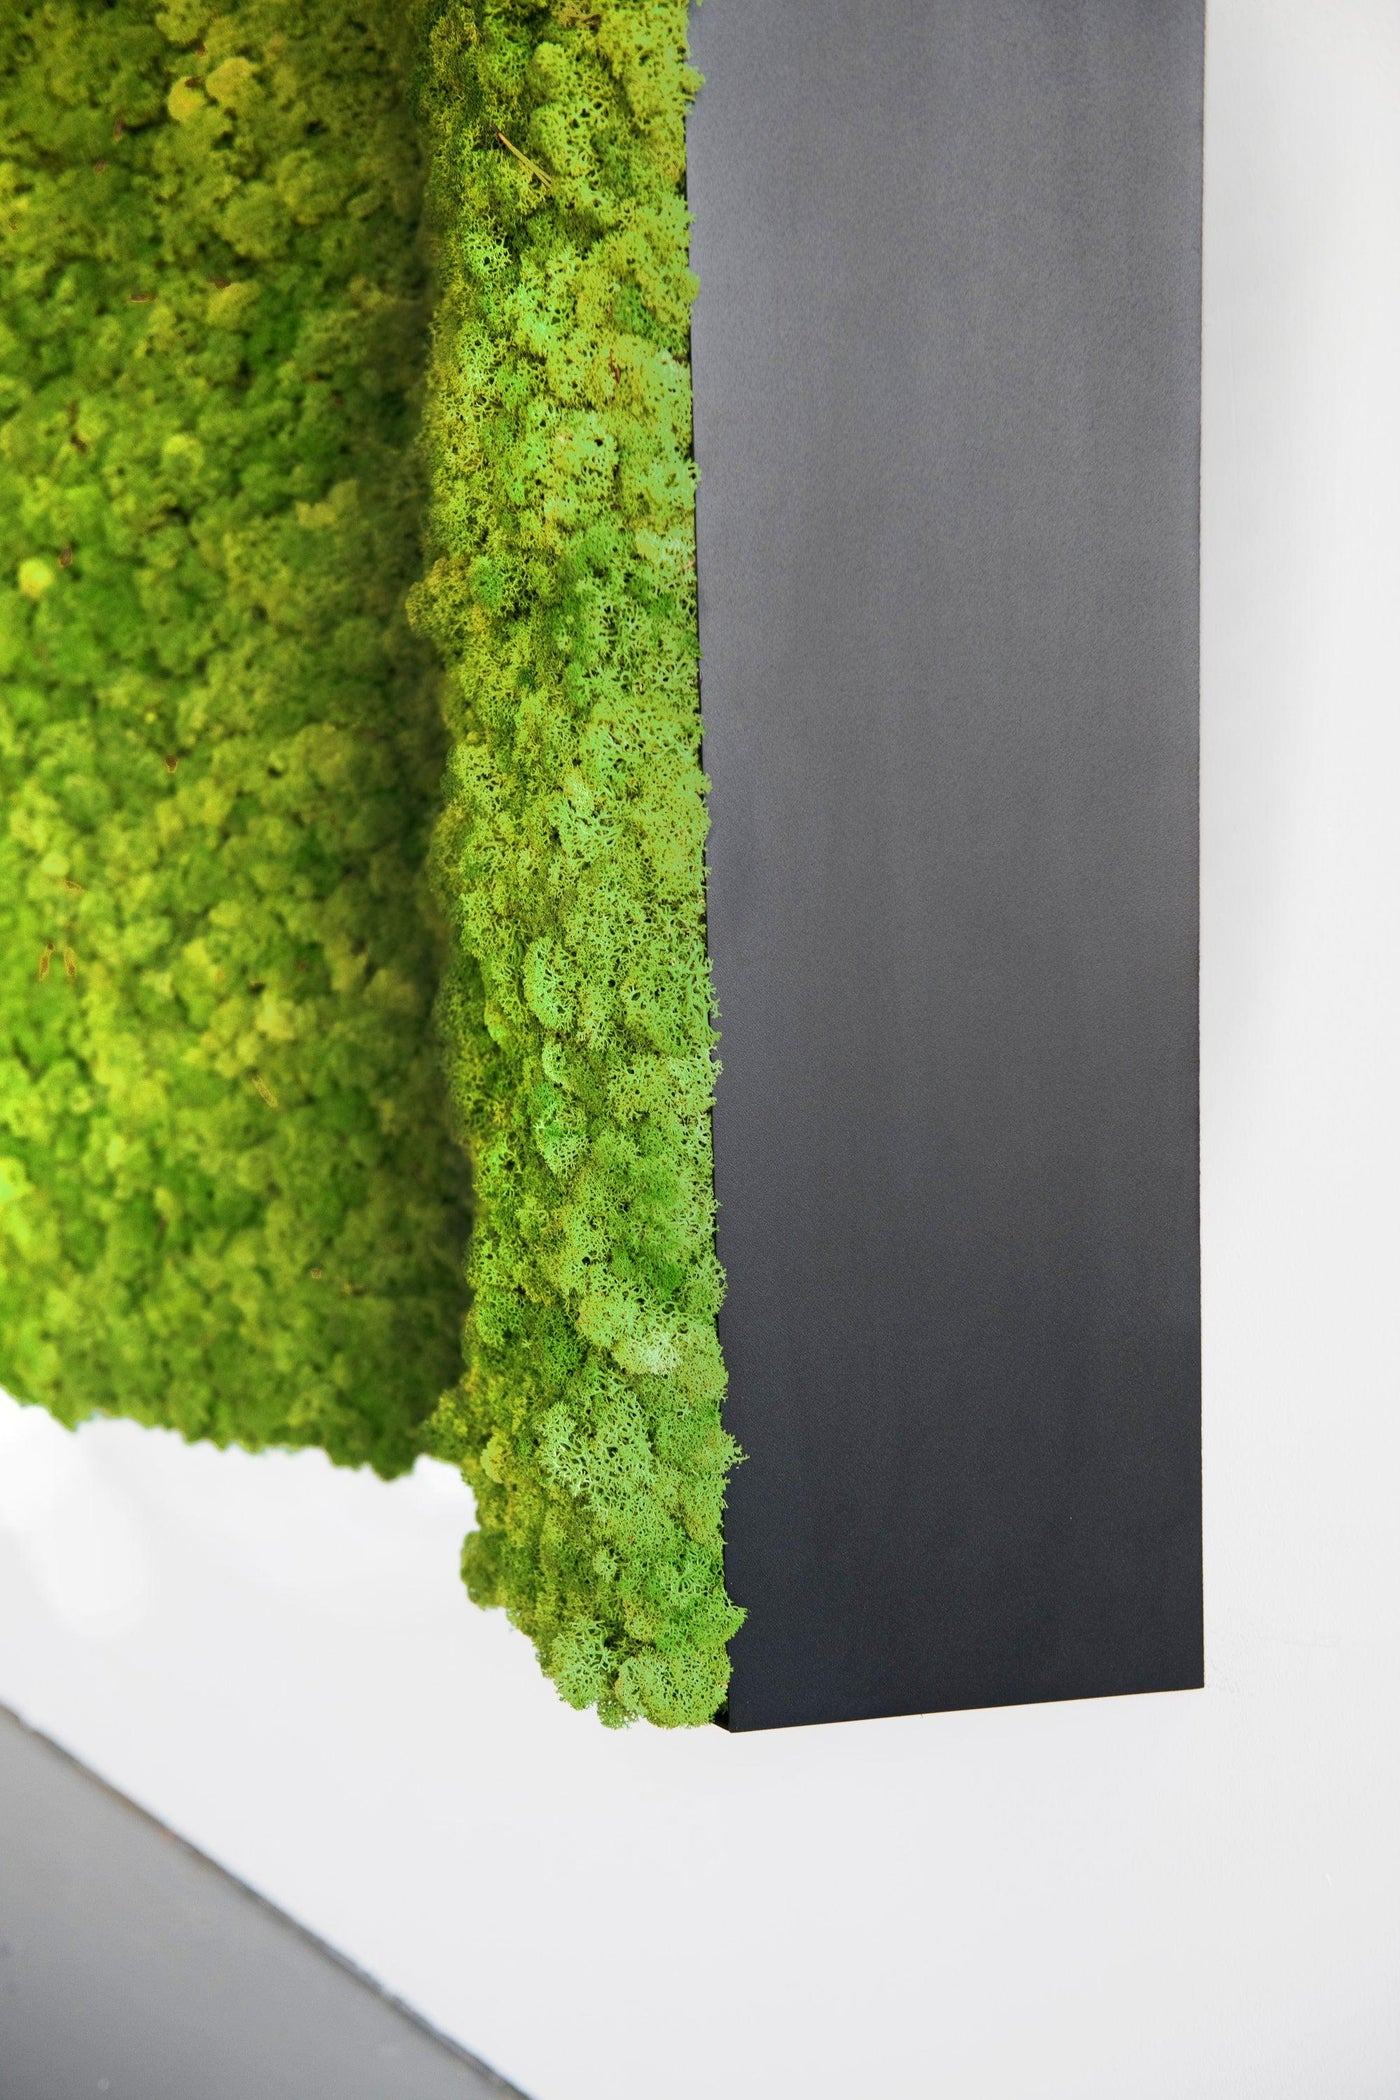 Moss & Plant Pillars: Moss 3D Wall Designs